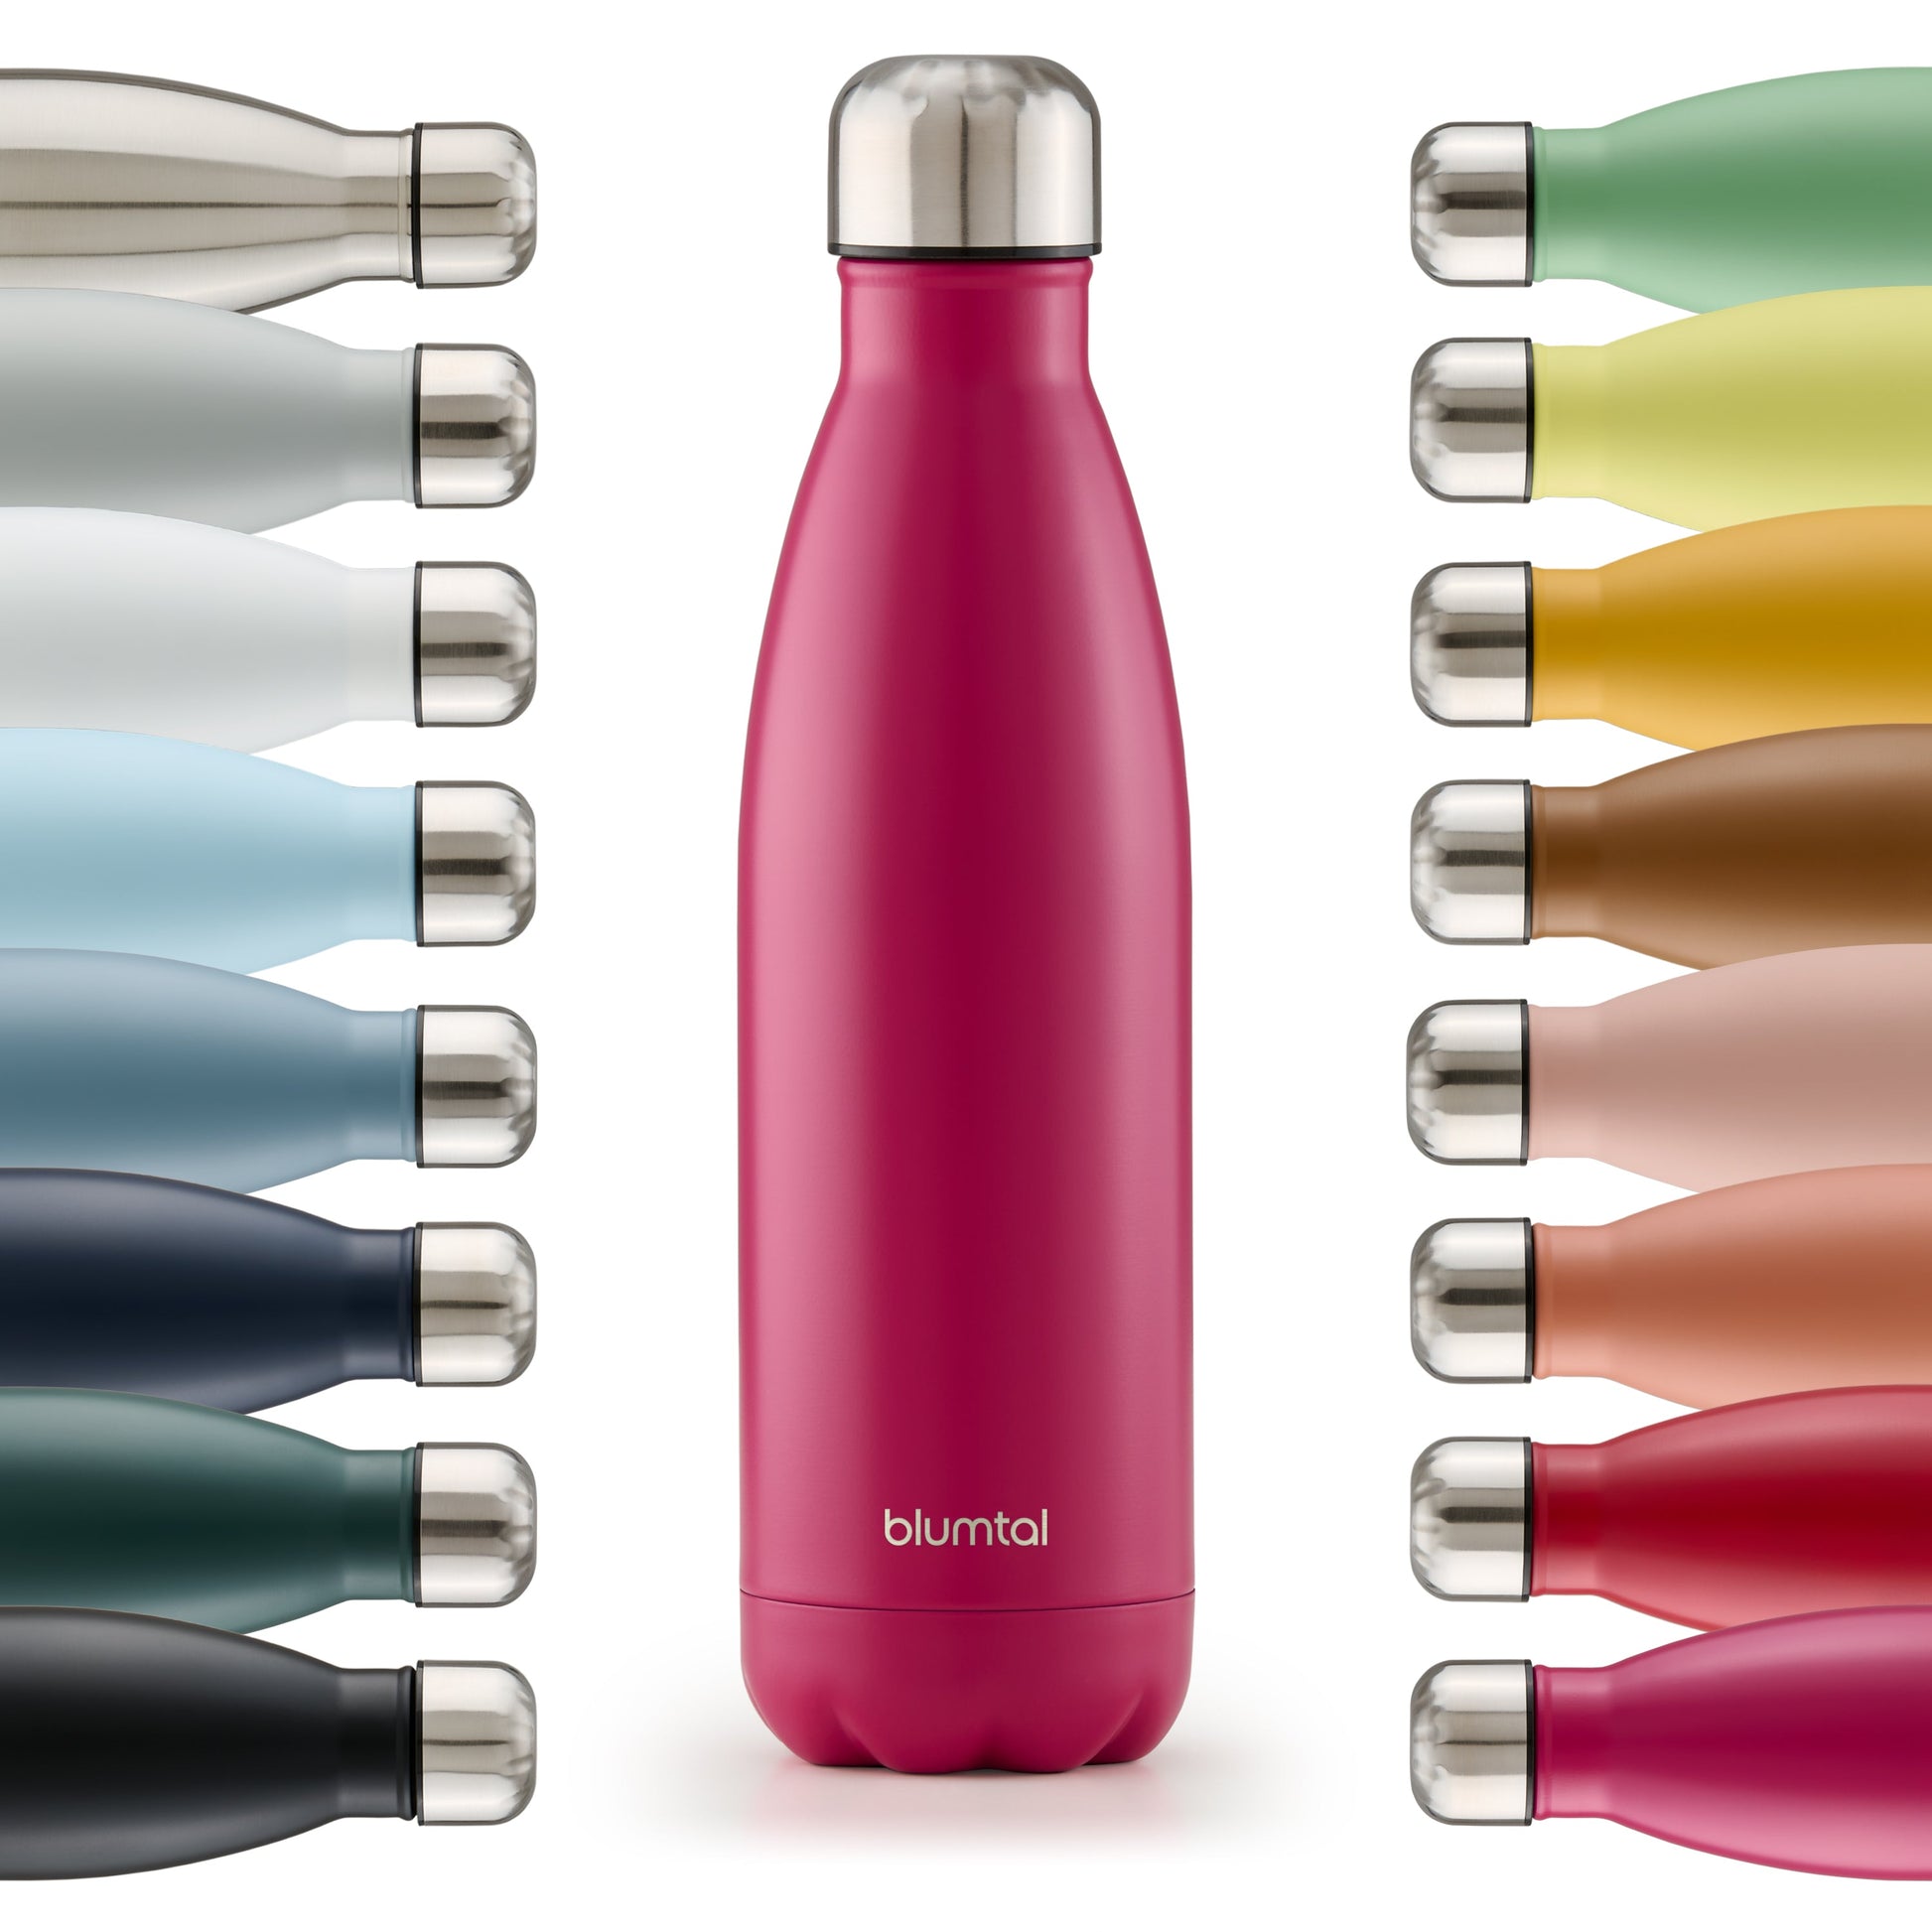 Farbige Auswahl an isolierten Edelstahl-Trinkflaschen von blumtal in einer Reihe angeordnet mit Fokus auf eine vorderseitige berry pink farbene Flasche.